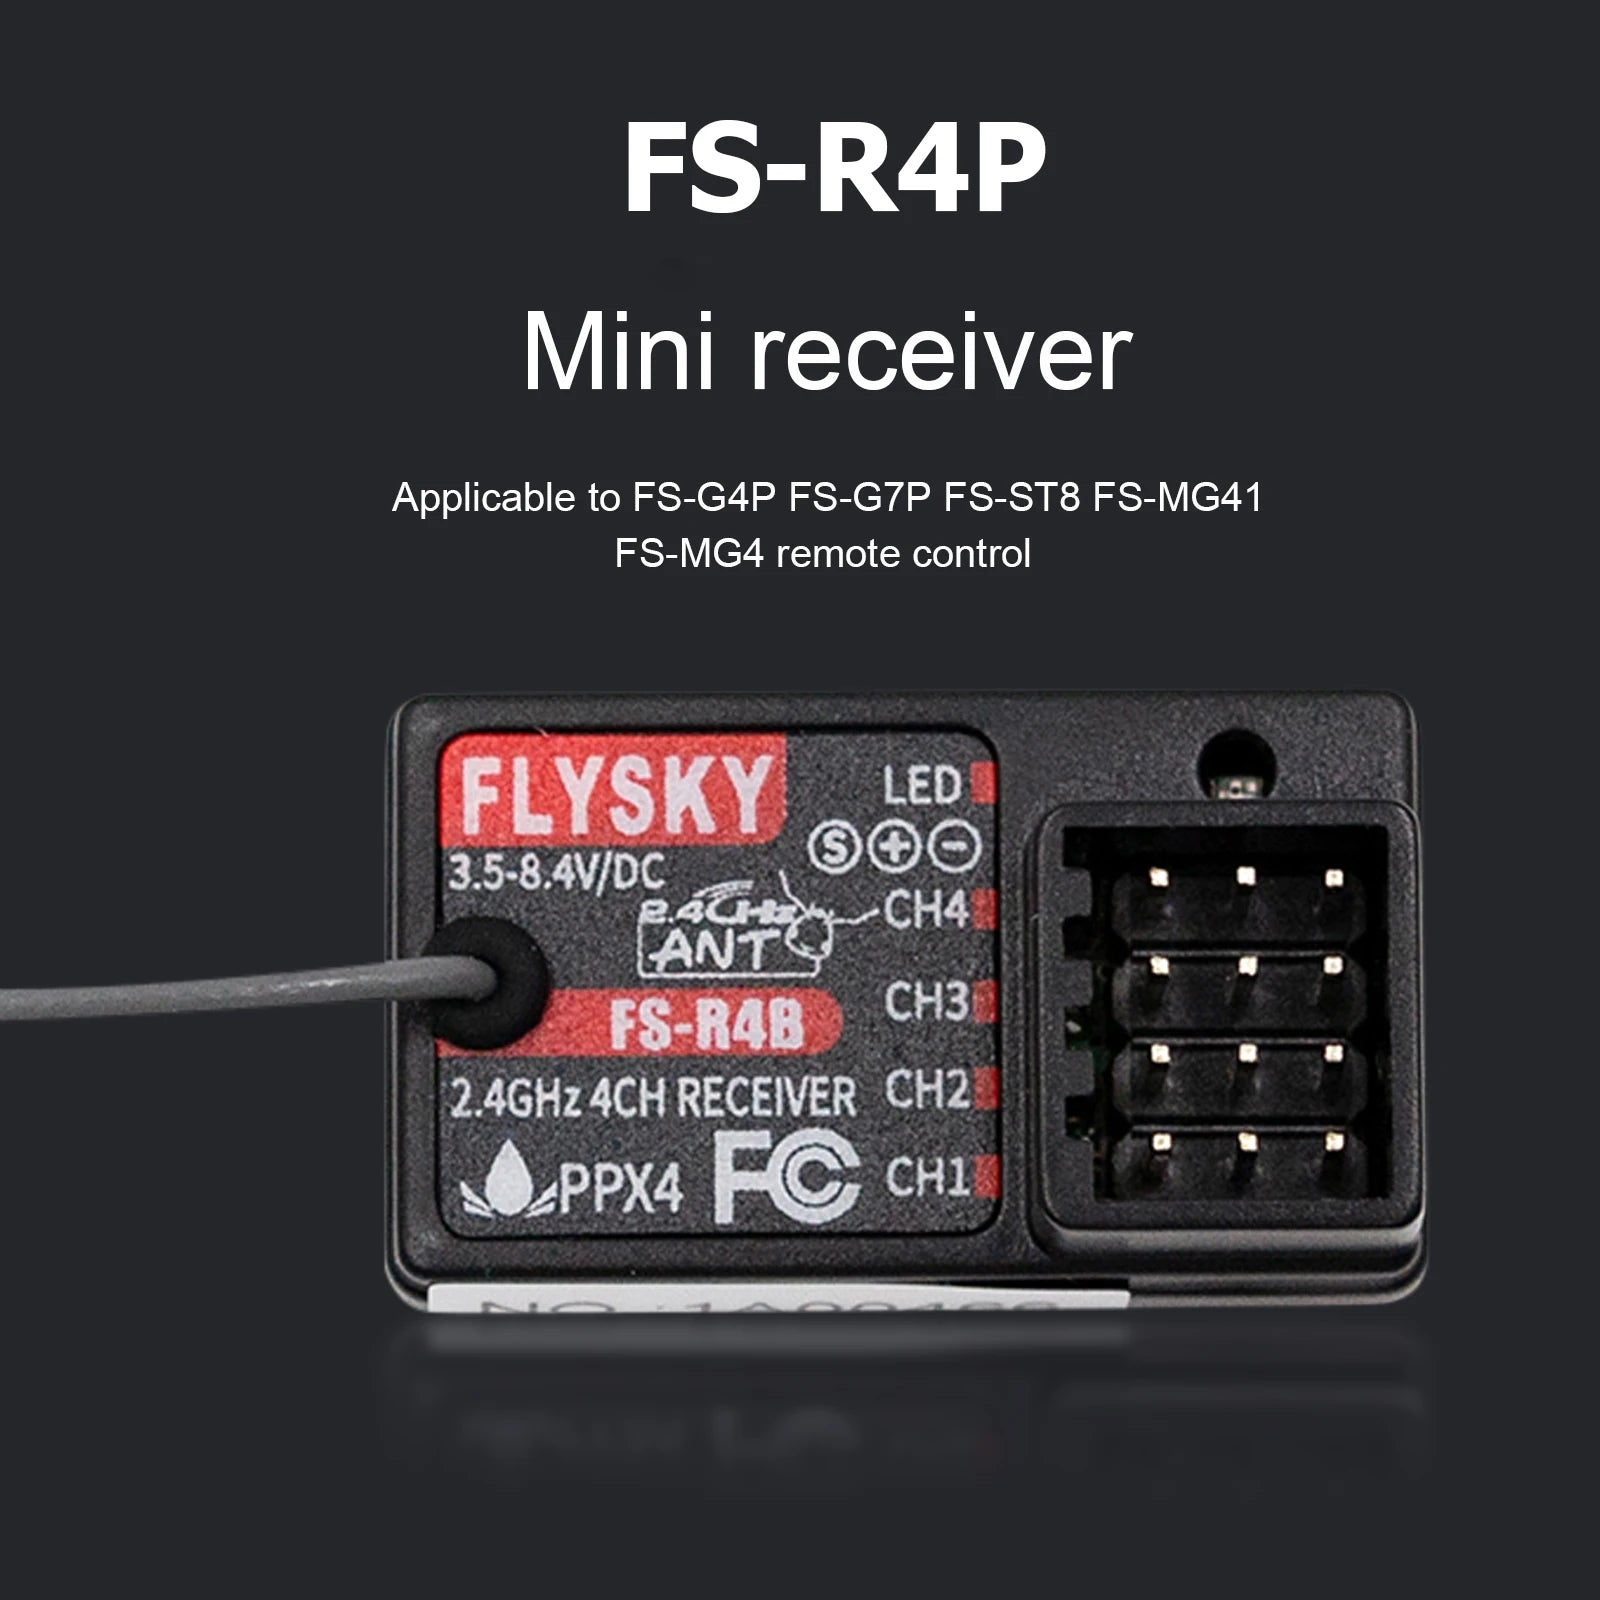 Flysky FS-R4B 4CH 2.4G Digital Receiver, FS-RAB 2.4GHz 4CH RECEIVER CH2 )PP